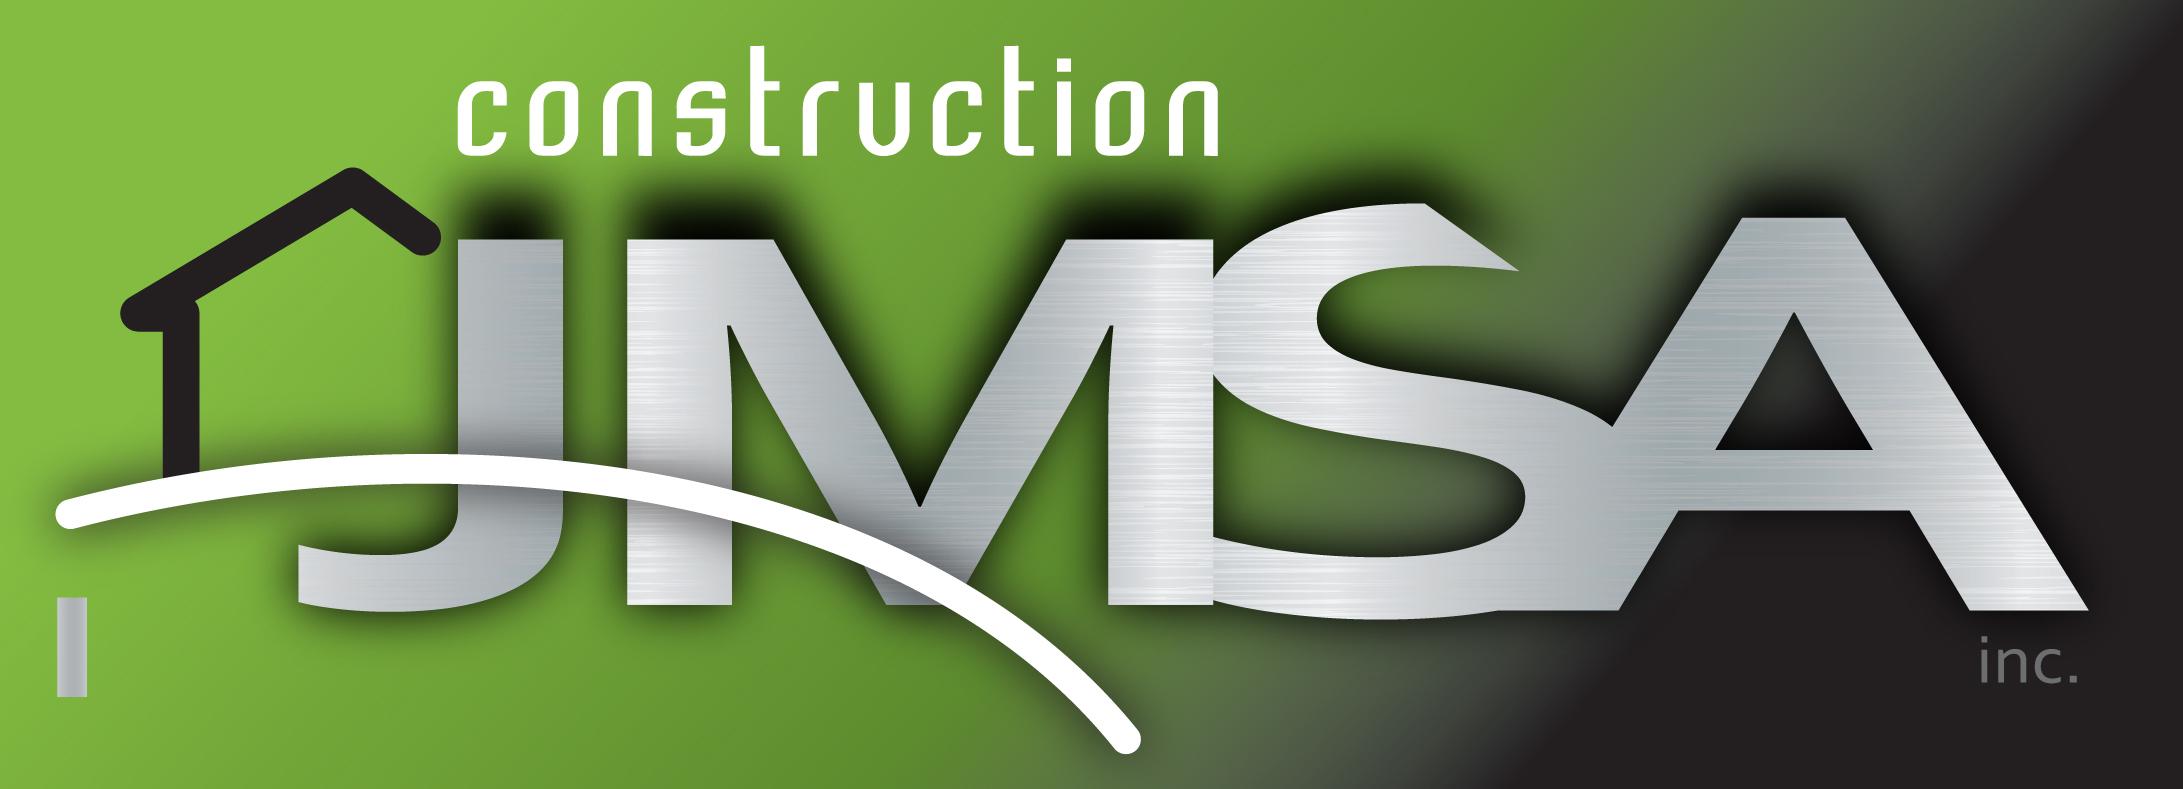 Construction JMSA inc.